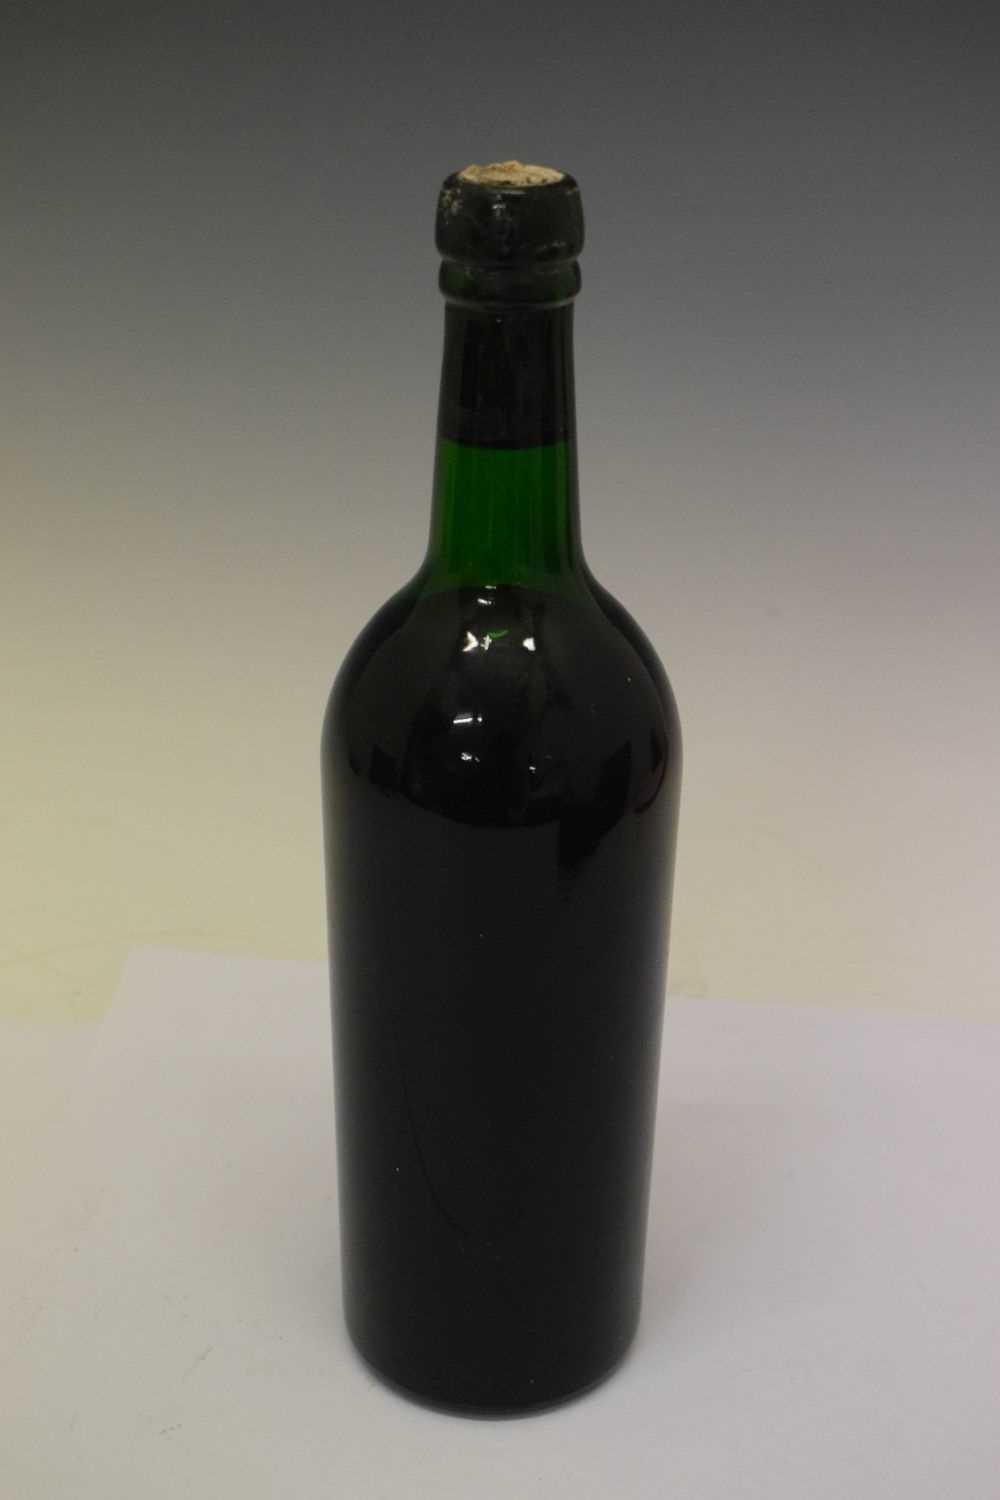 Bottle of Cockburn's Vintage Port, 1967 - Image 3 of 6